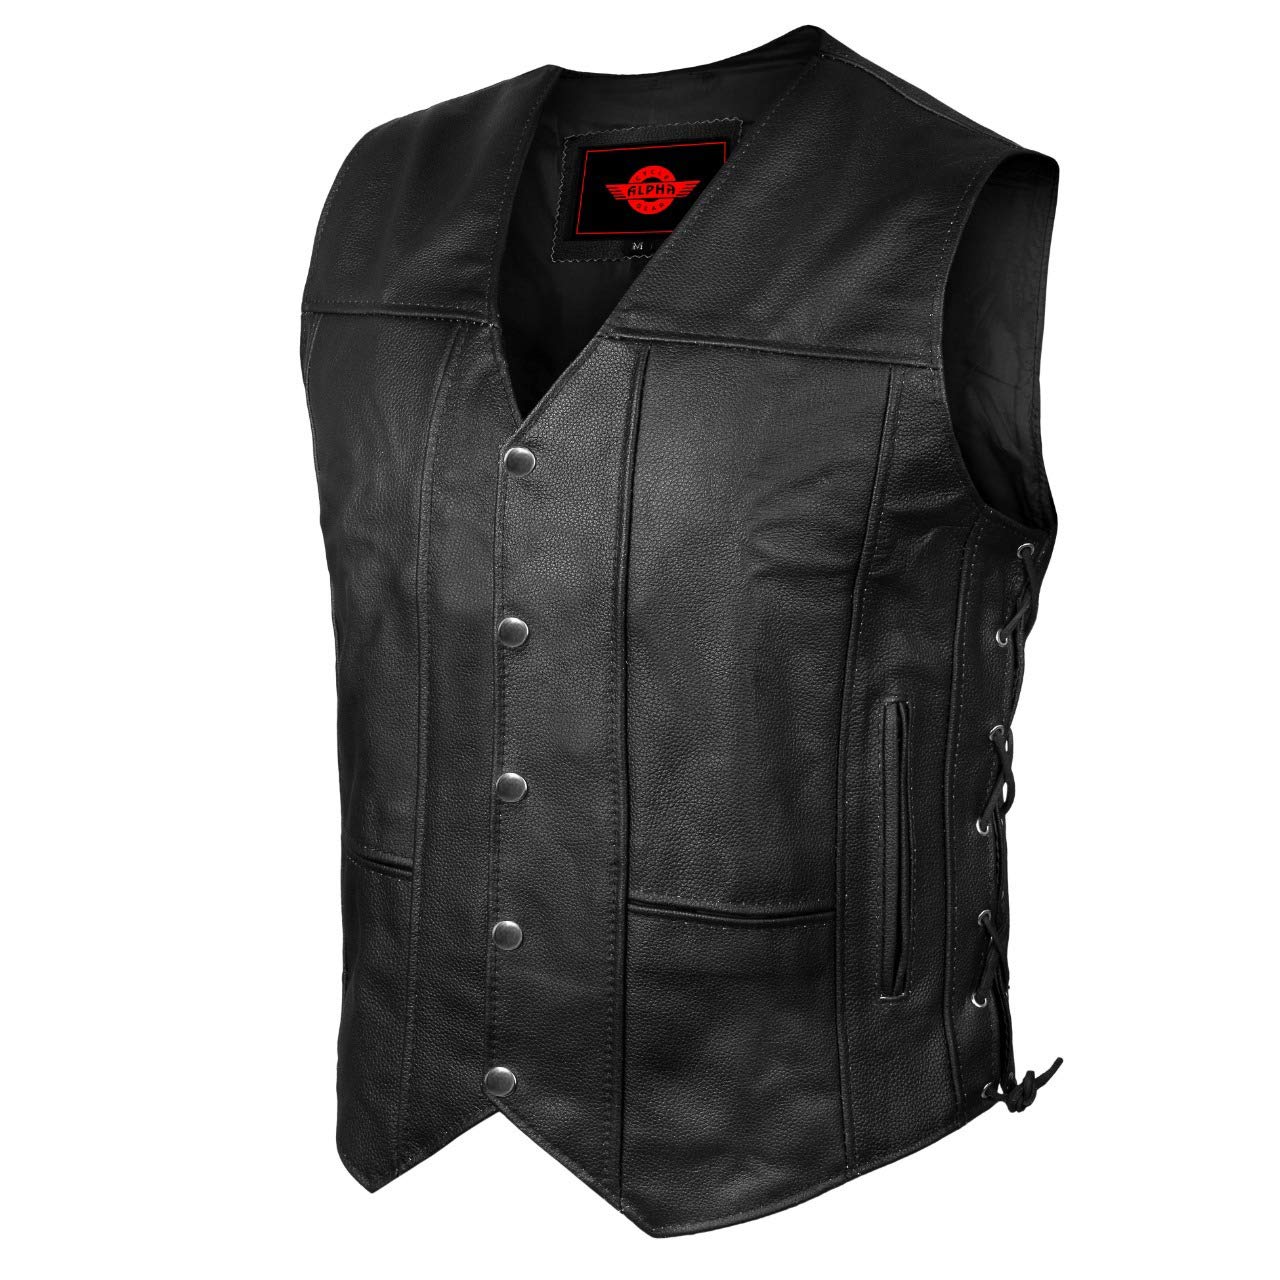 JAYEFO Alpha Leather Motorcycle Vest for Men Riding club Black Biker Vests With concealed carry gun Pocket cruise Vintage